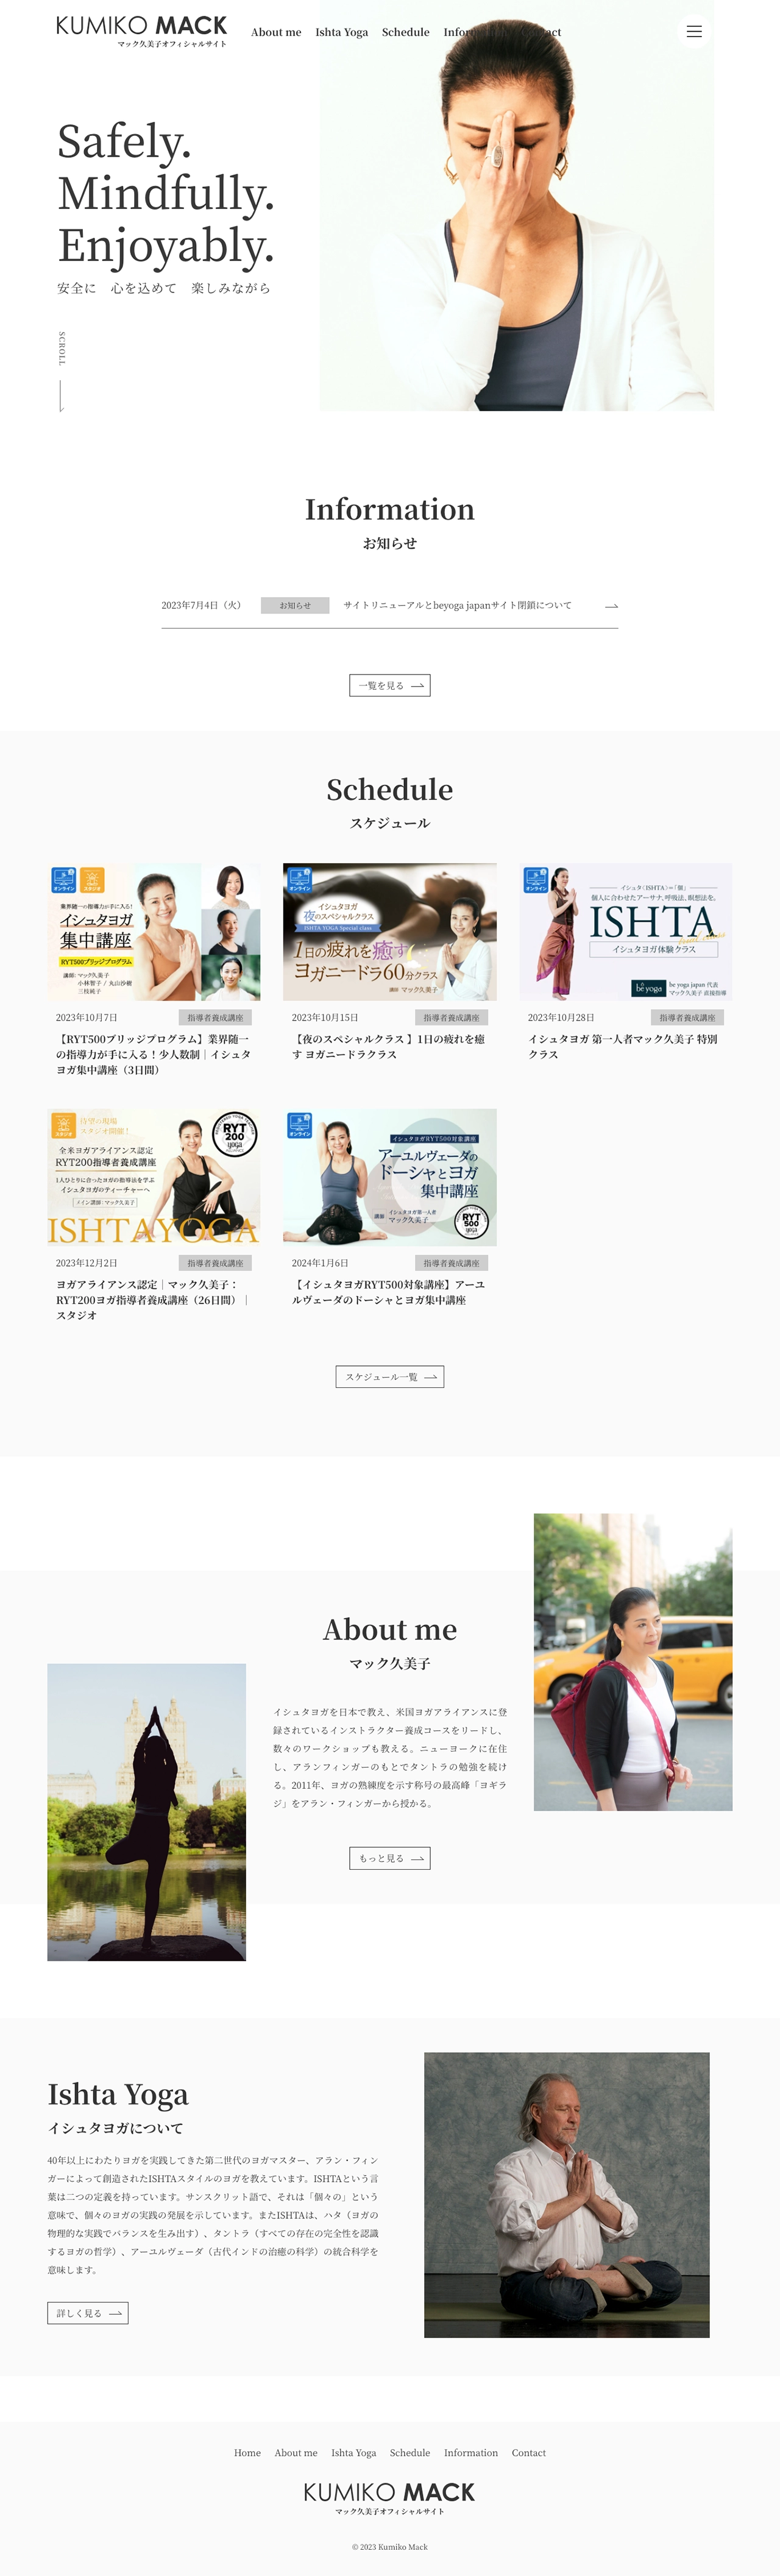 マック久美子オフィシャルウェブサイト